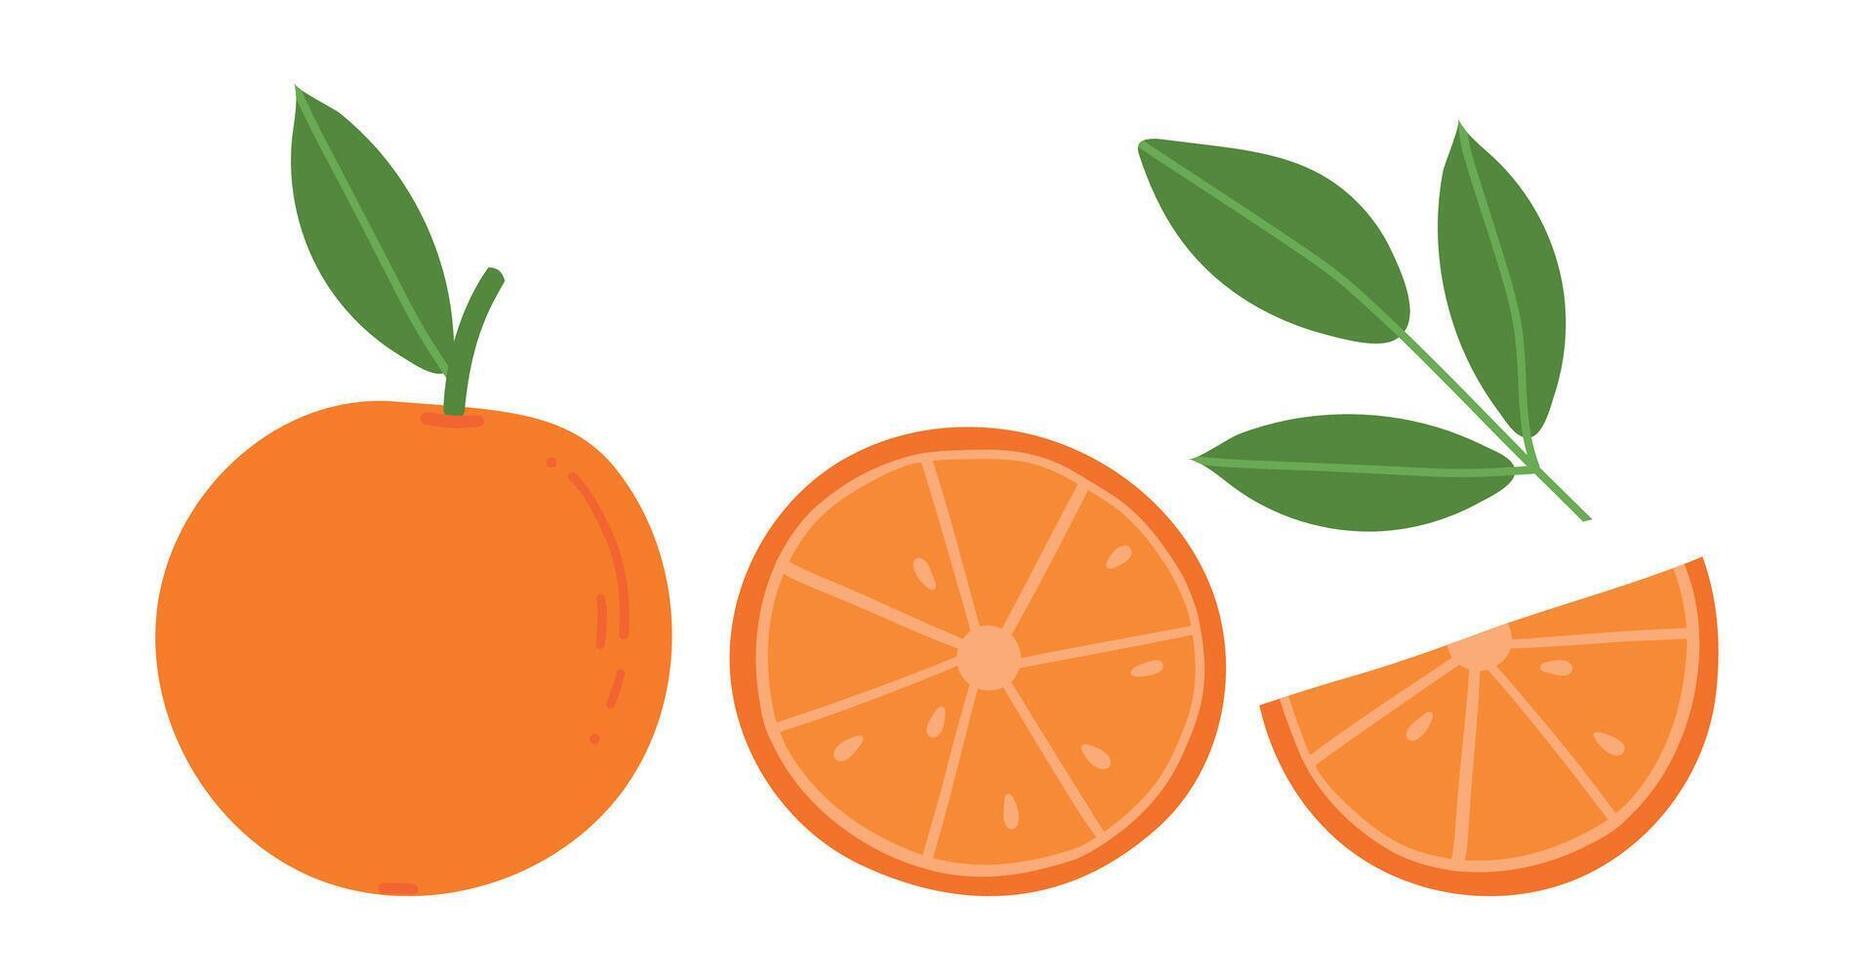 Orange fruit. Orange fruit slice. Citrus isolated on white background. Juicy seasonal fruits. Flat illustration vector